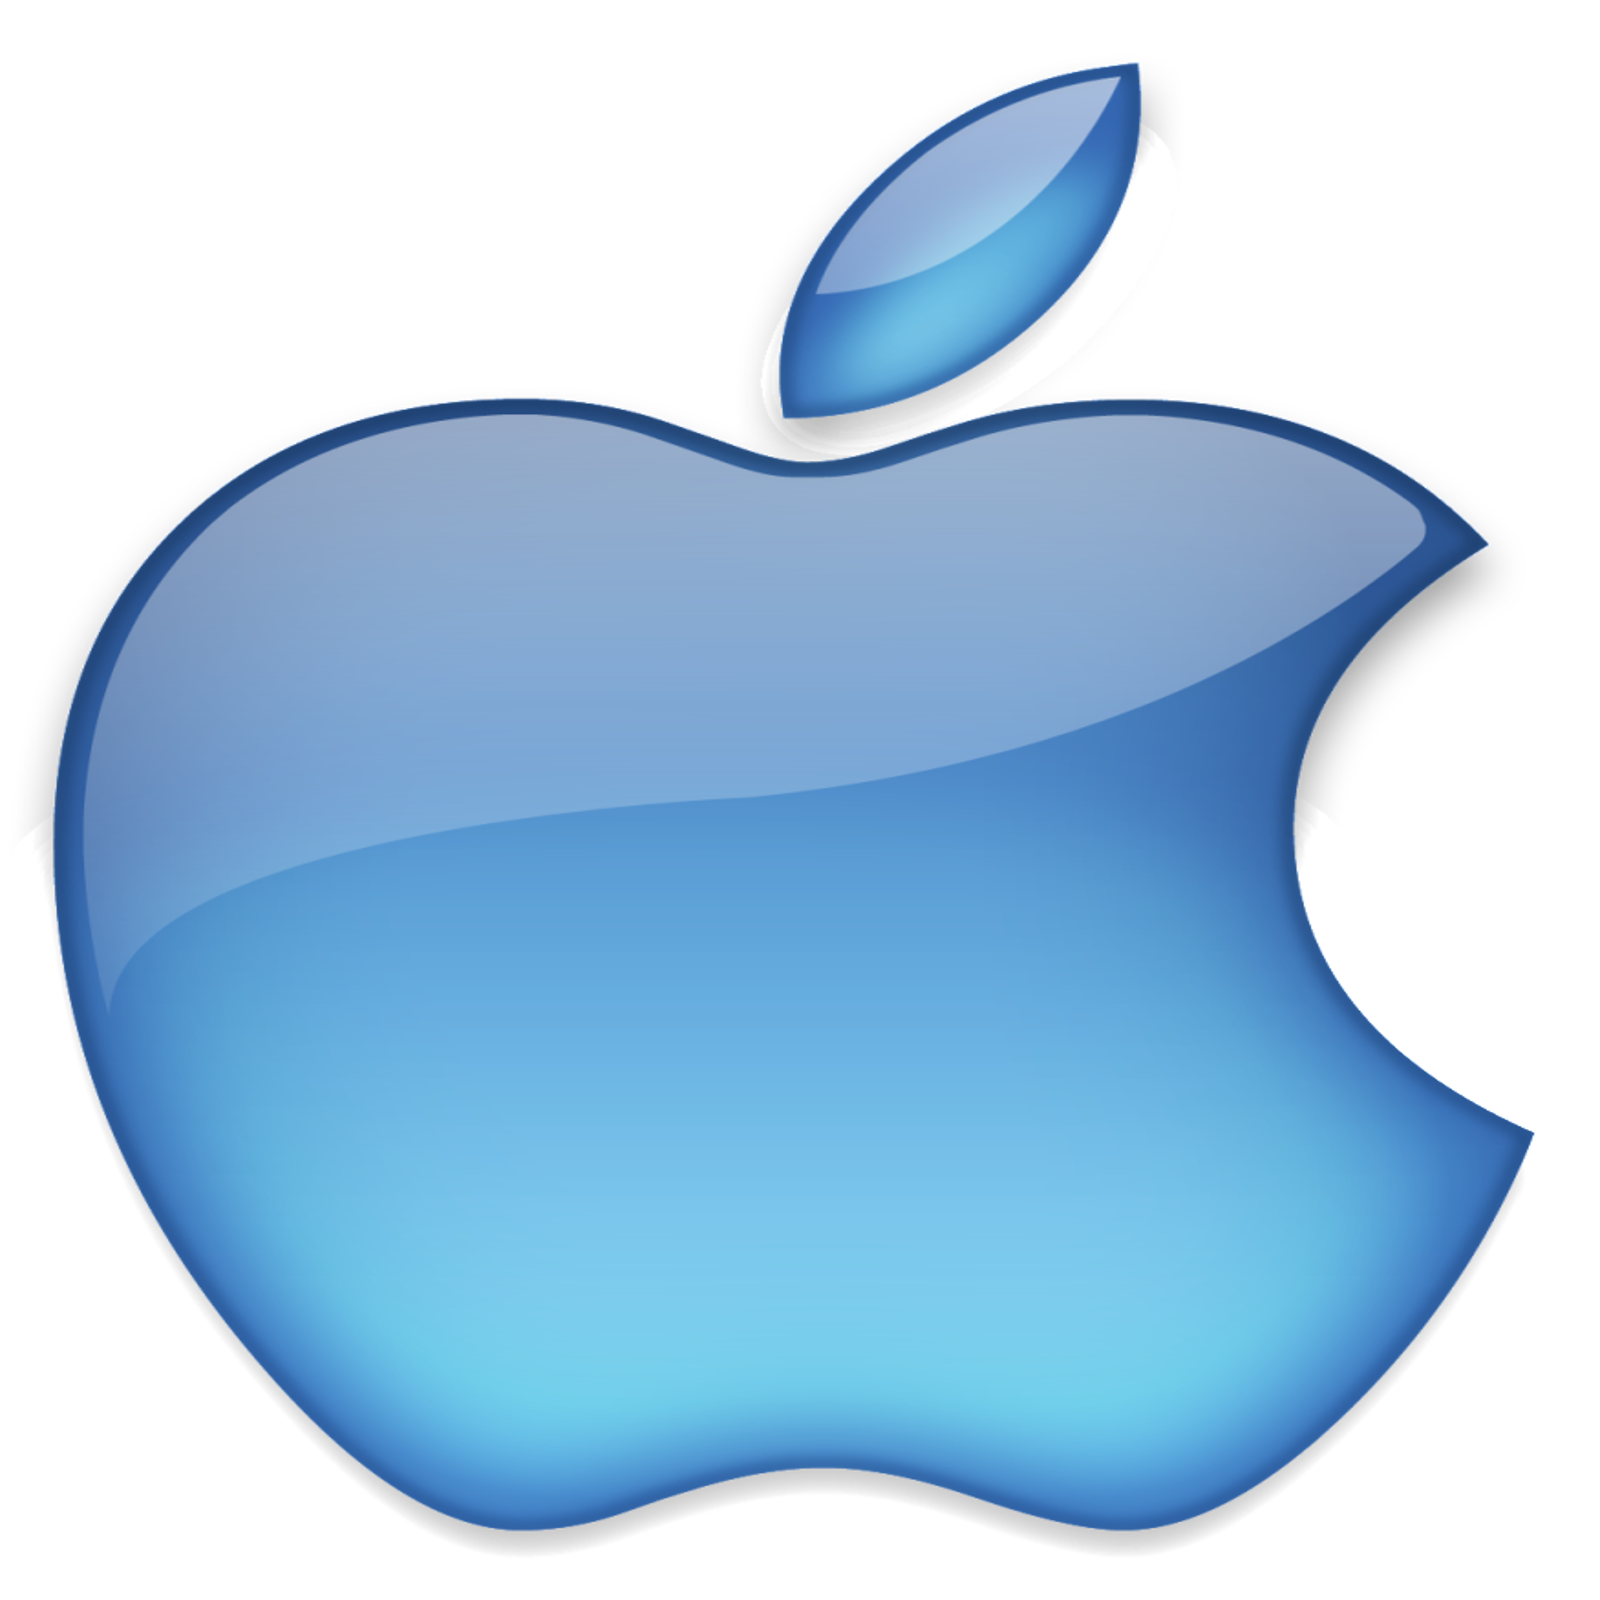 Windows Logo Apple Logos Iphone Download Free Image PNG Image